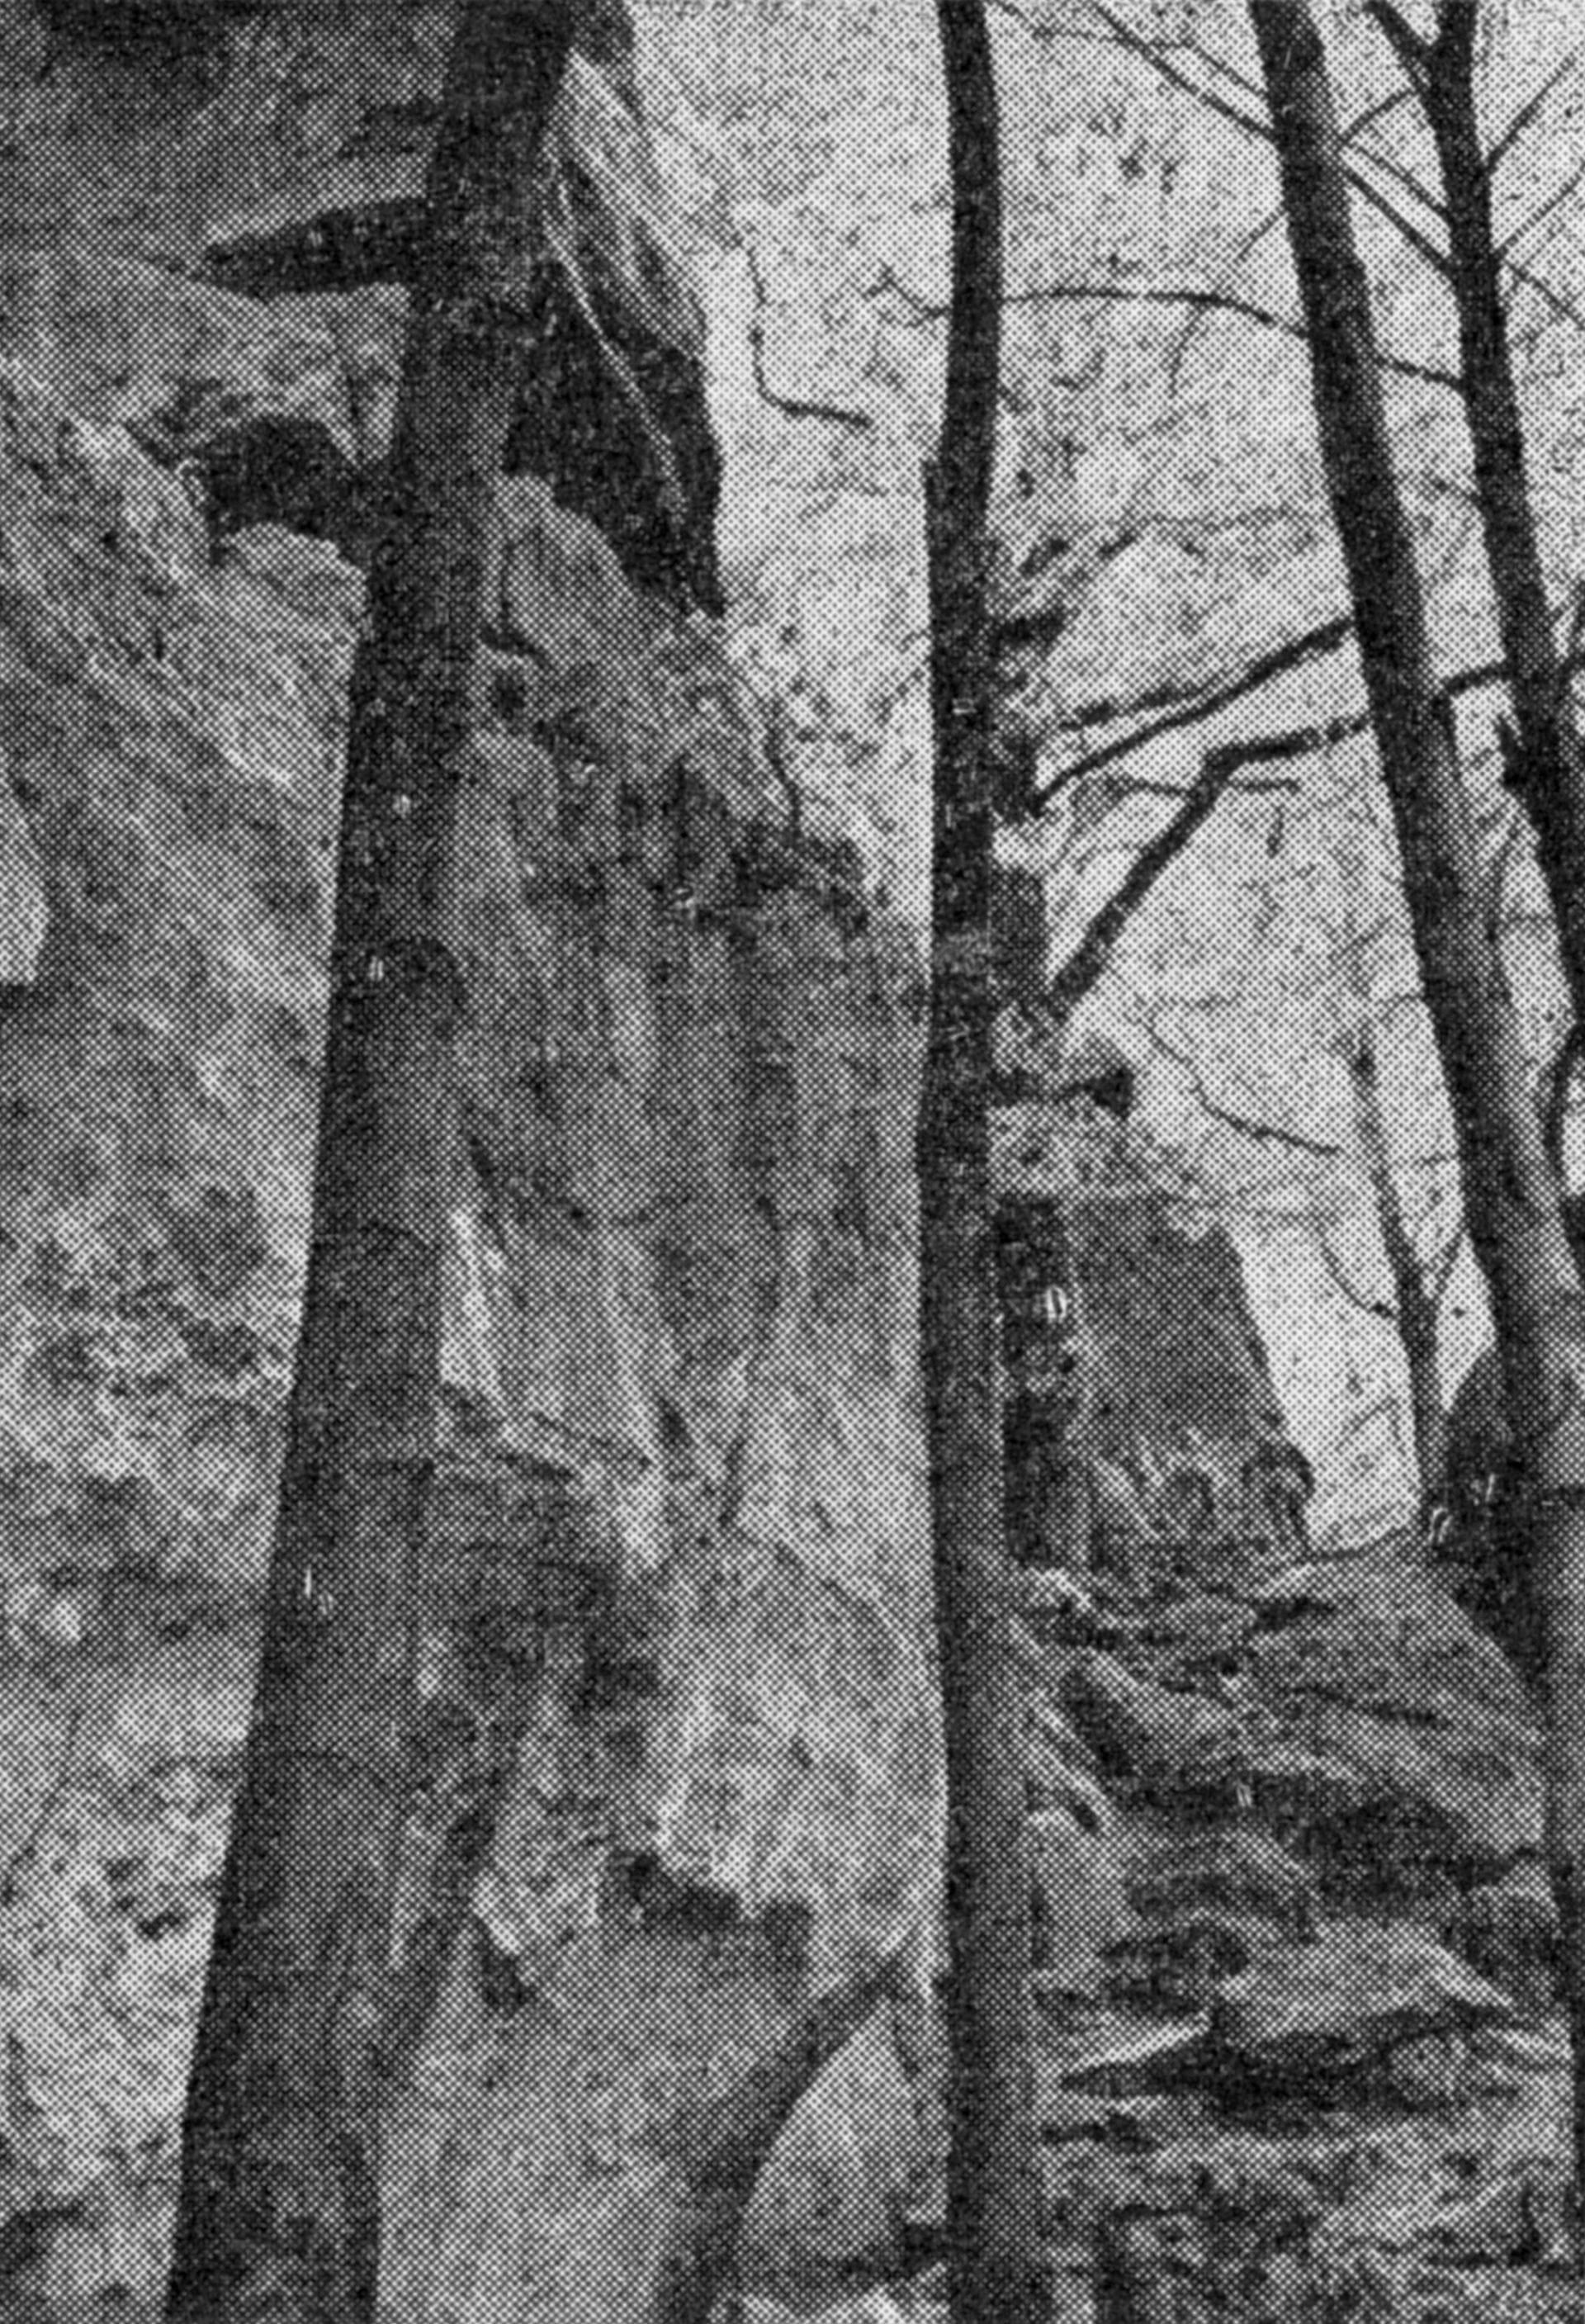 Aufgang zur Rothen Steinhöhle bei Eschershausen